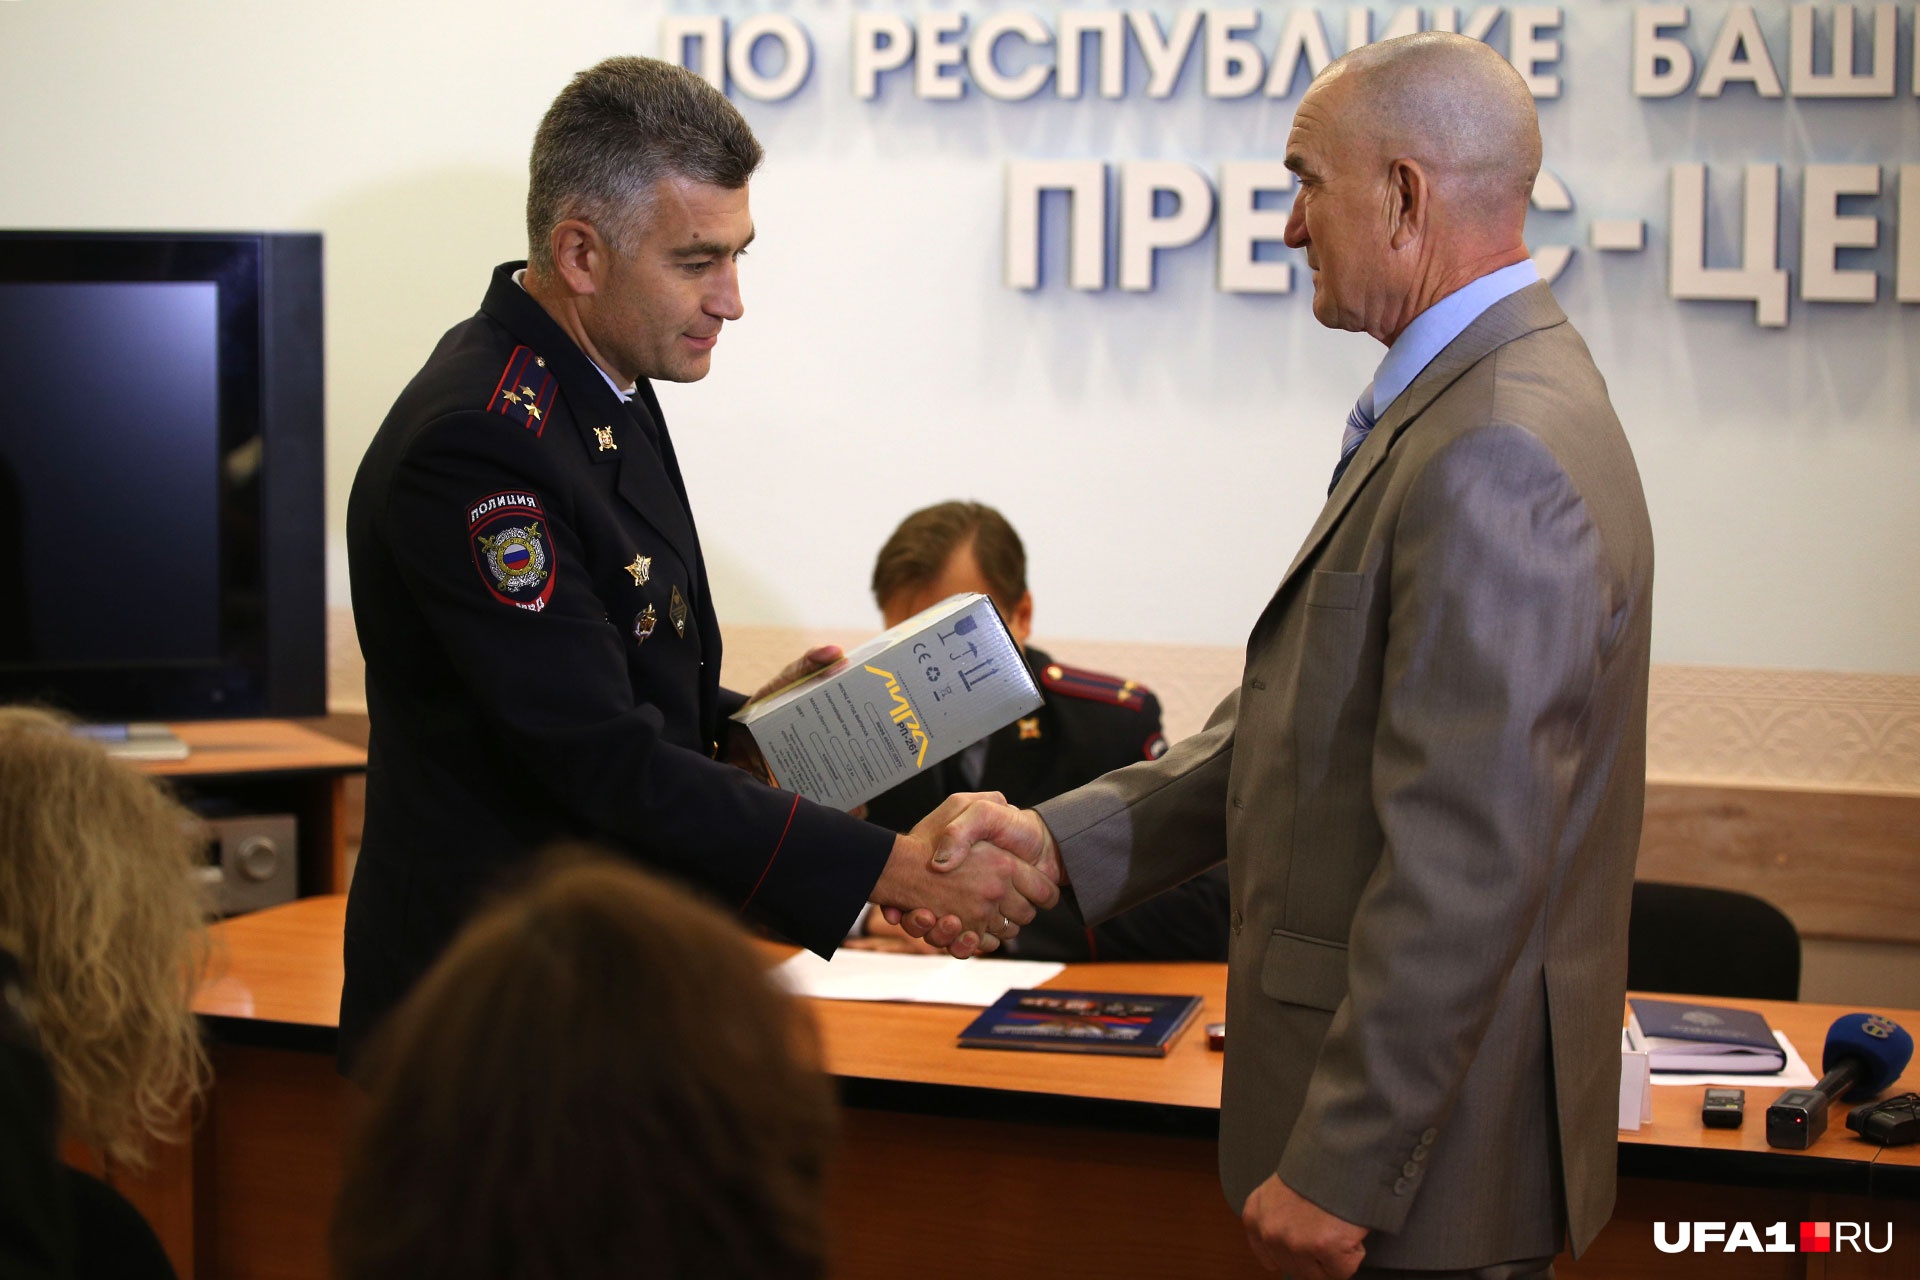 Героя за мужество и отвагу наградили — в МВД по Башкирии ему подарили приемник<br>